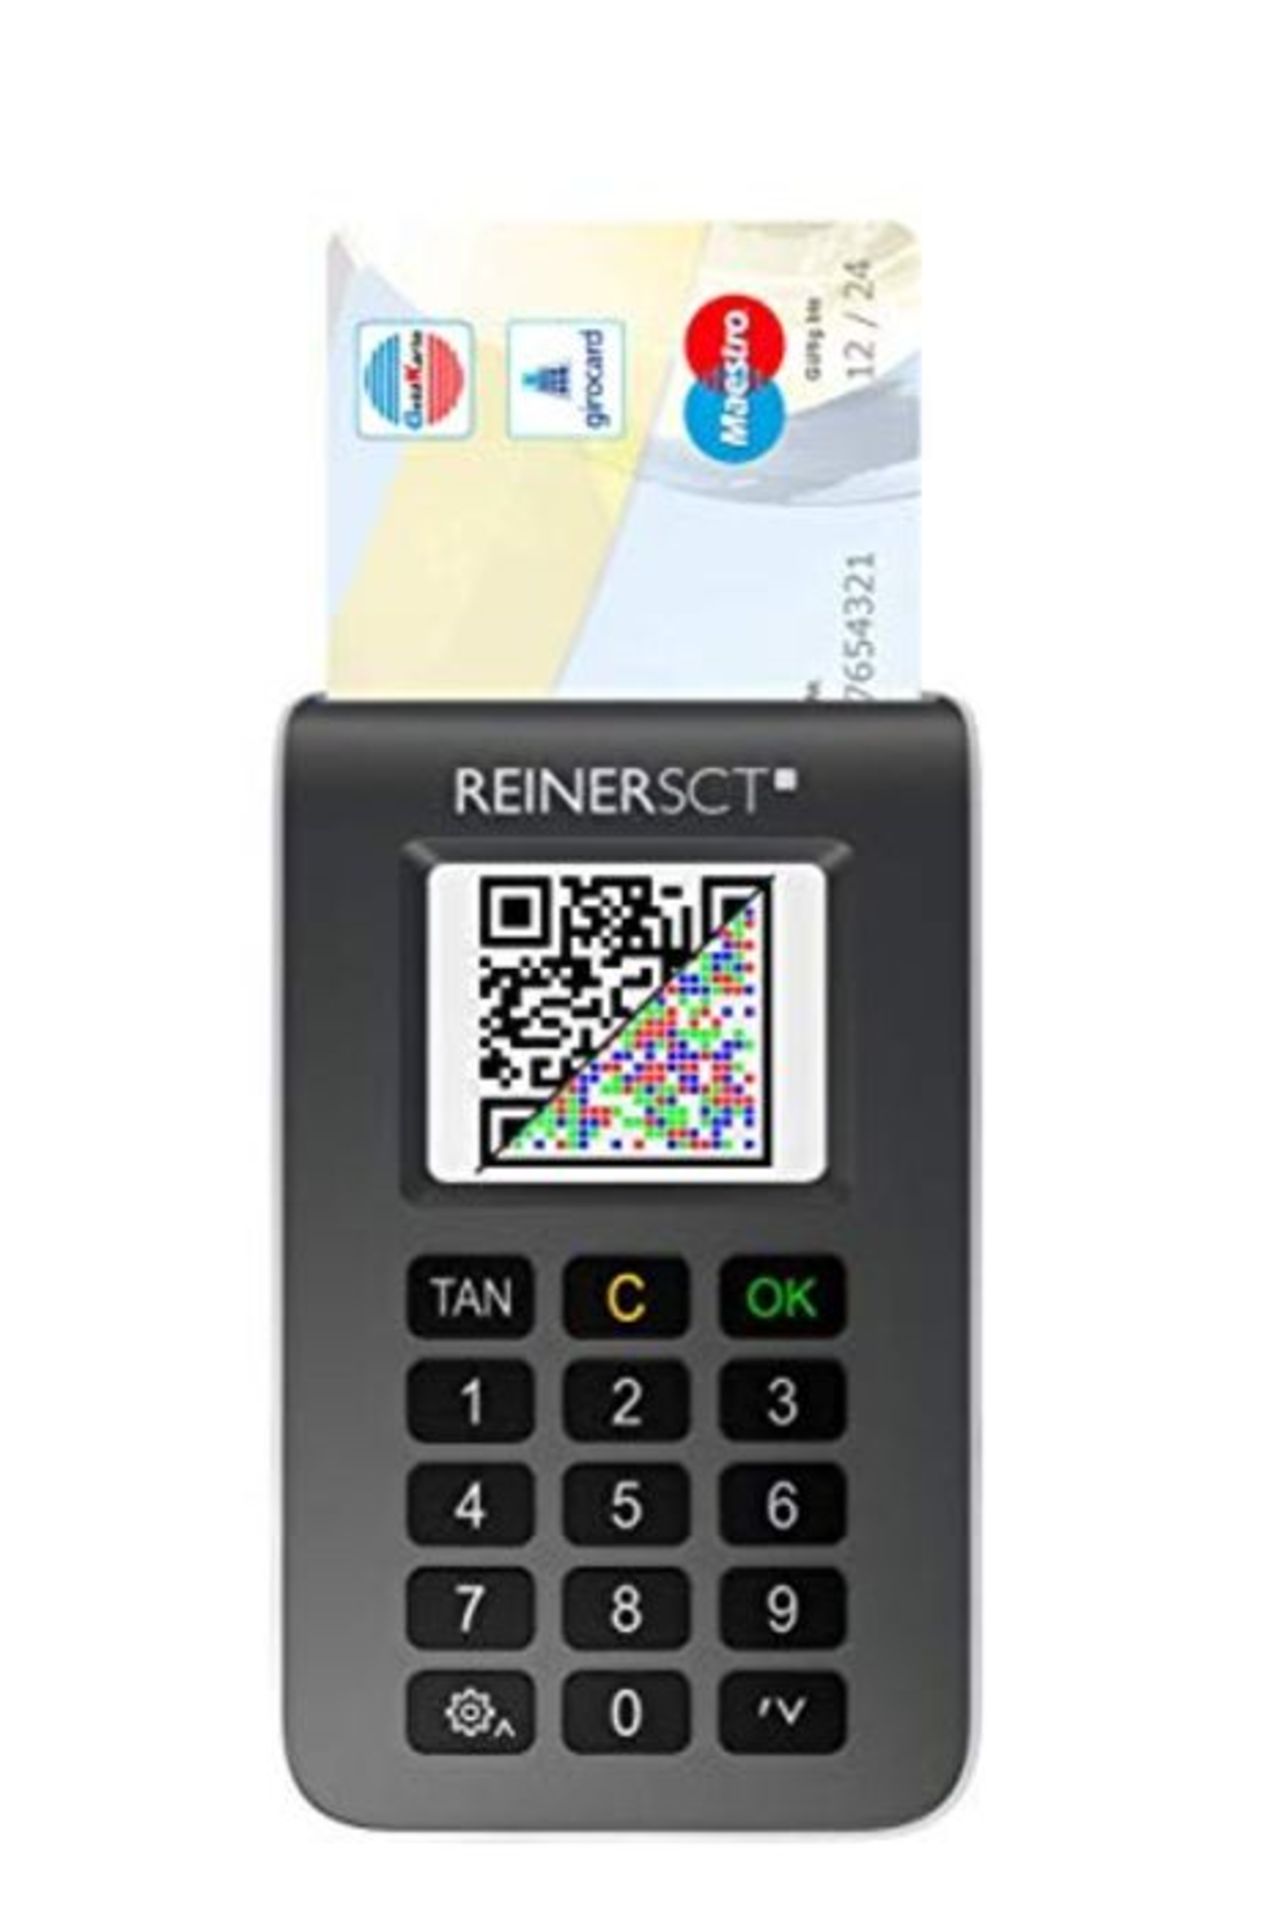 REINER SCT tanJack photo QR I Chip Tan Generator für Online Banking